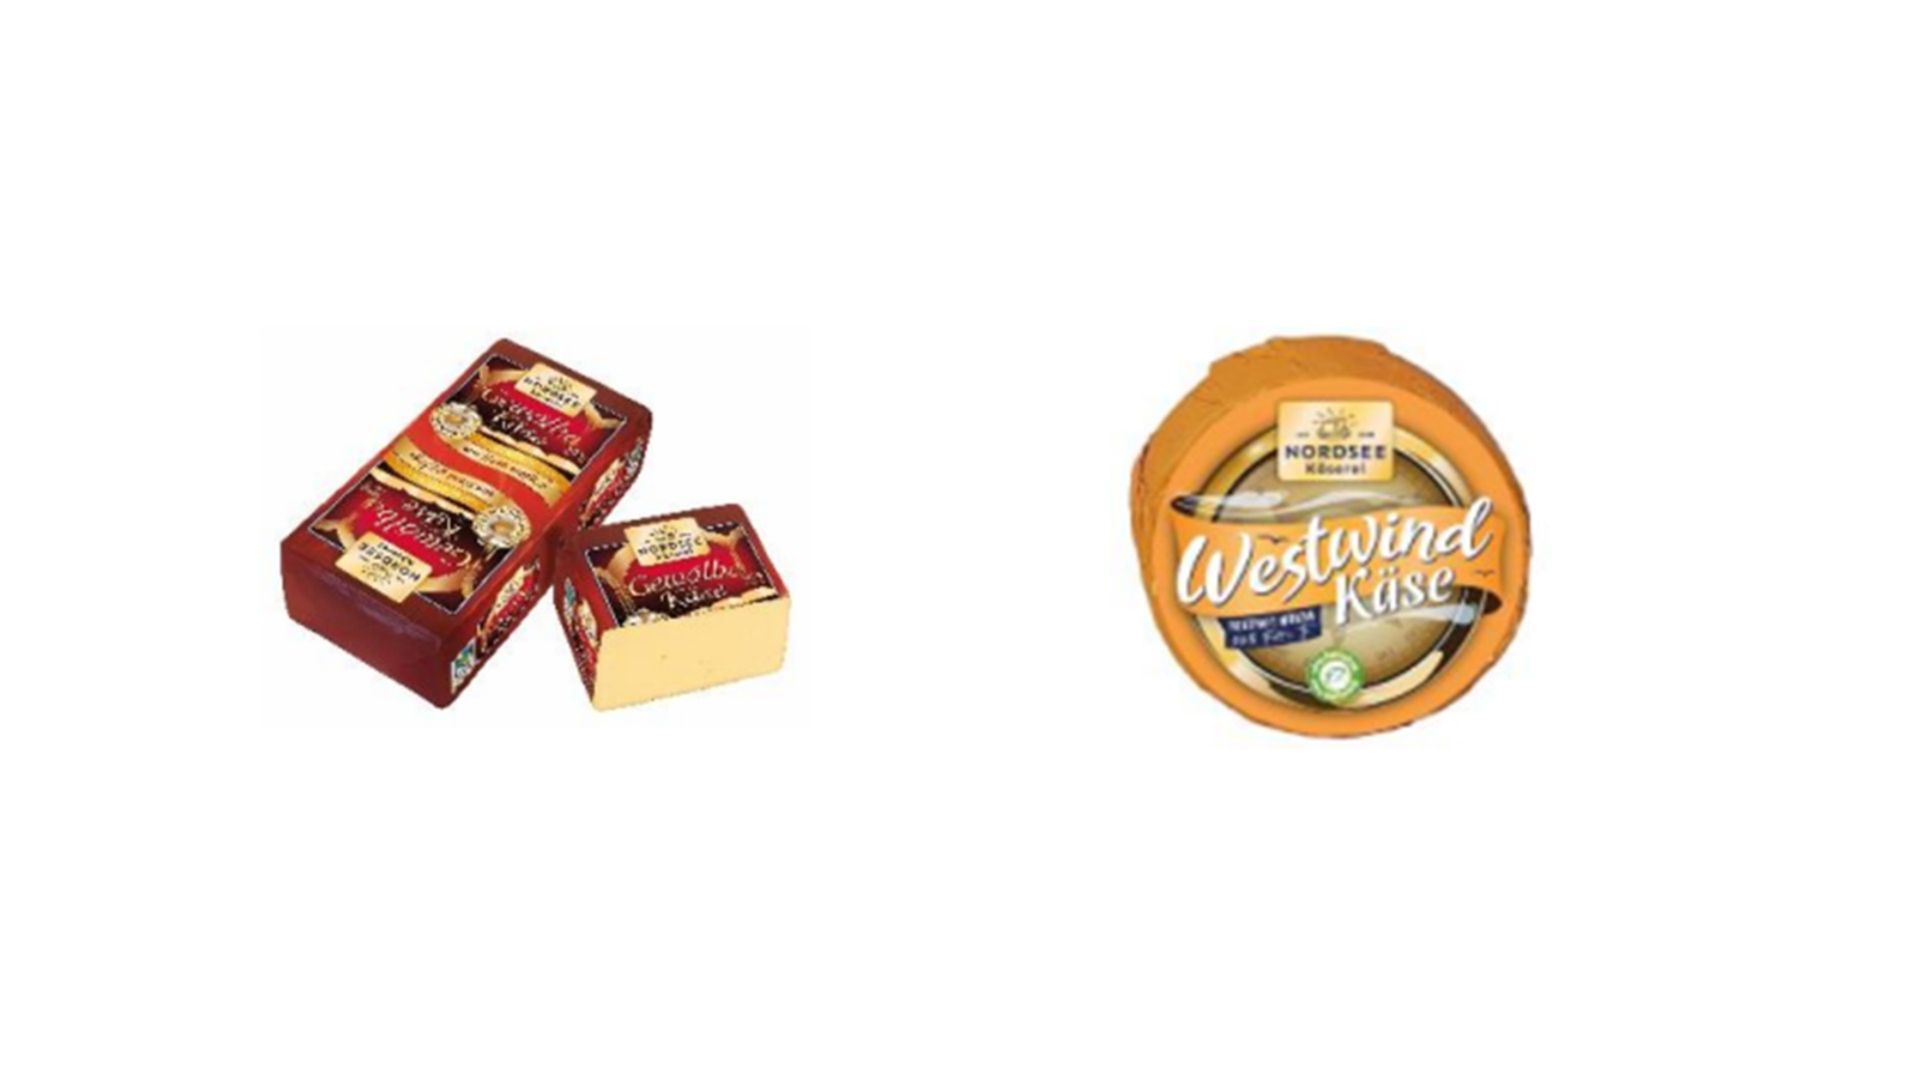 Käse-Rückruf ausgeweitet: Nun sind diese Produkte betroffen